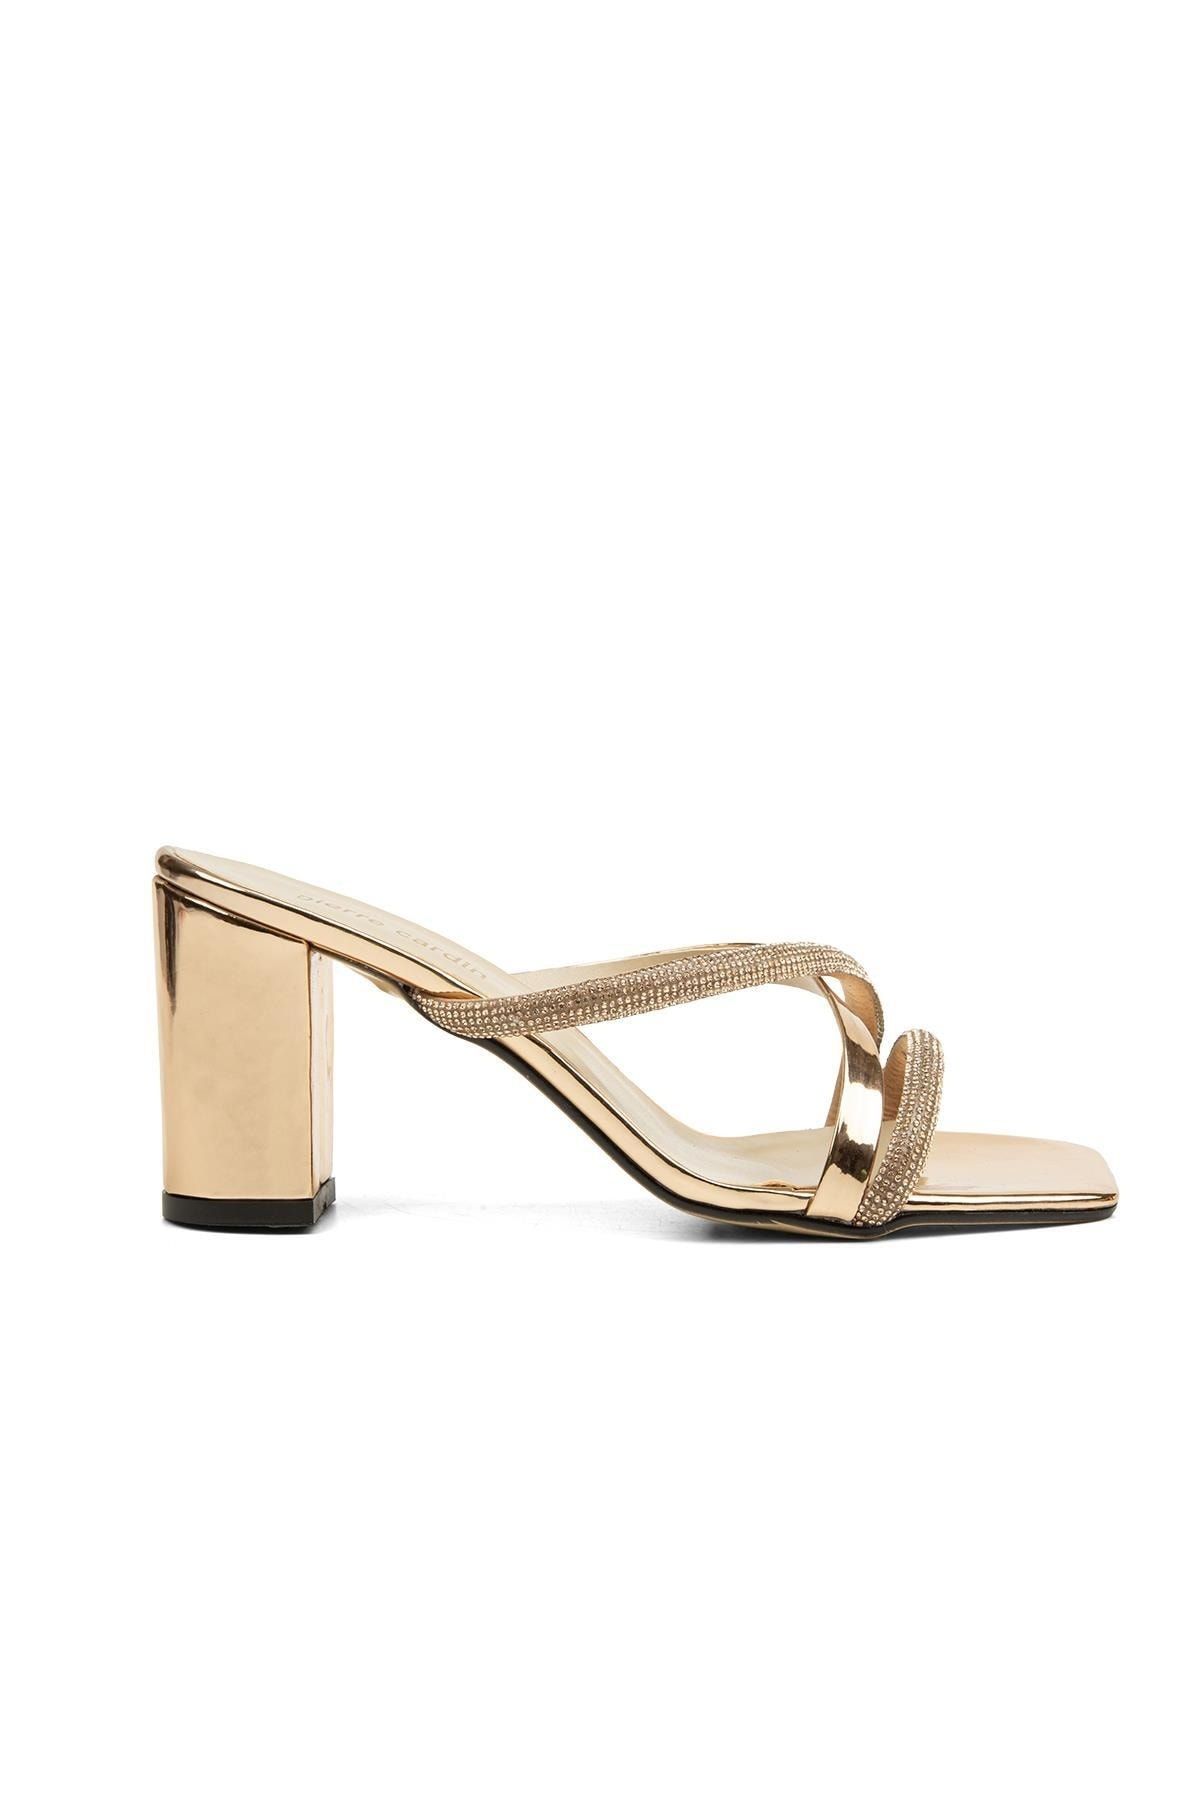 Pierre Cardin ® | Pc-52217-3478 Altın - Kadın Topuklu Ayakkabı